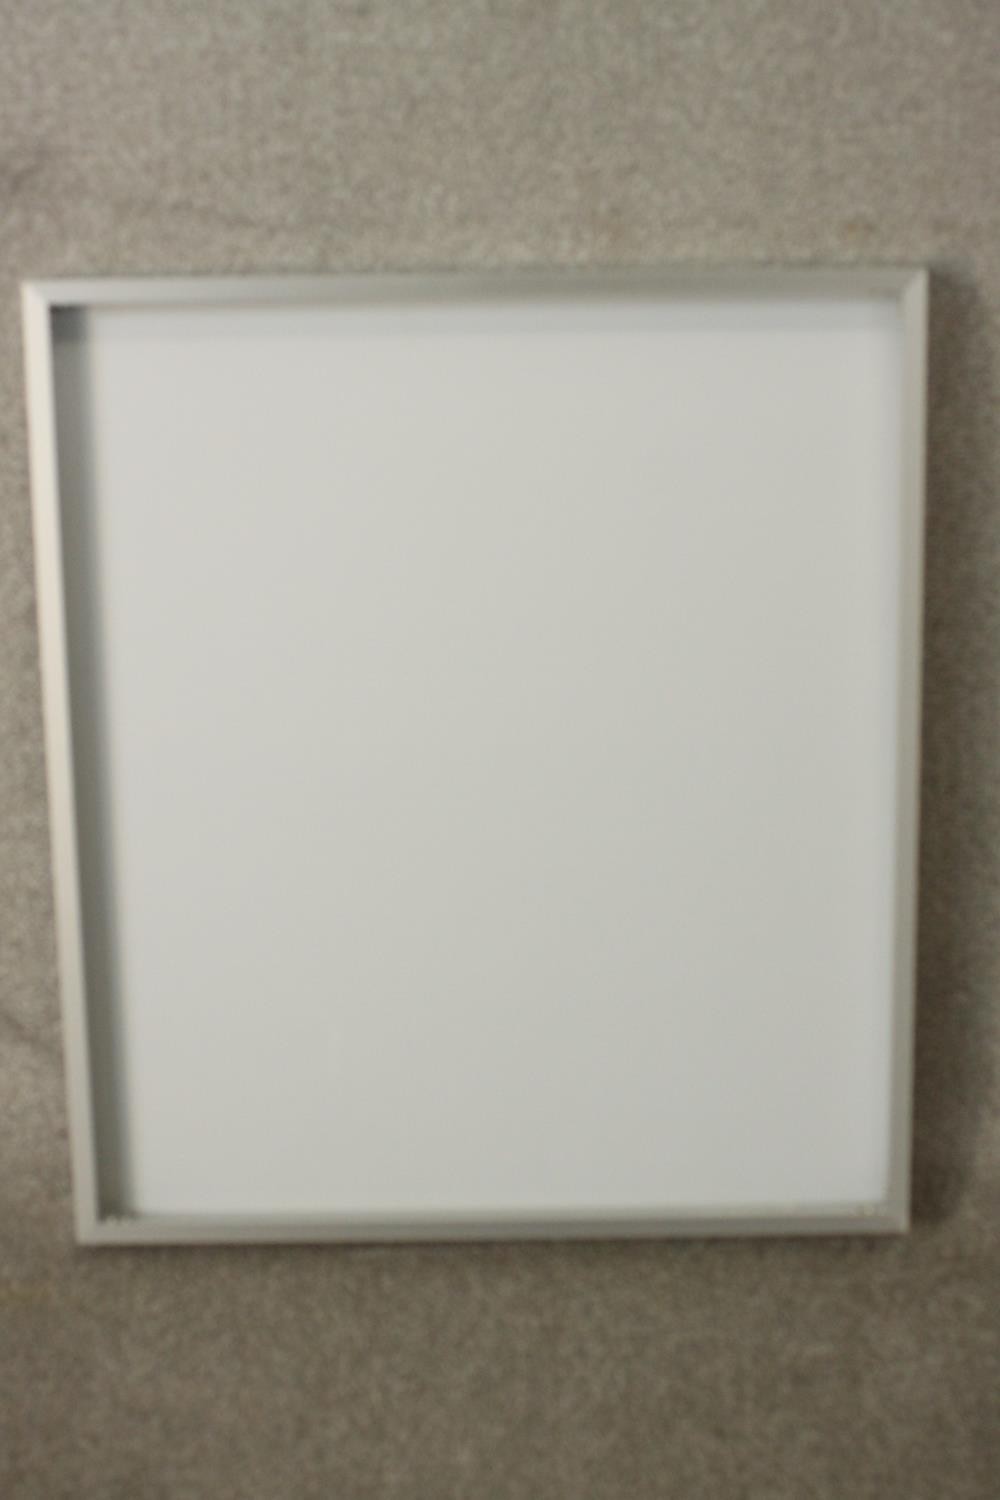 A contemporary RAK bathroom mirror, of rectangular form. H.69 W.60cm. - Image 6 of 6